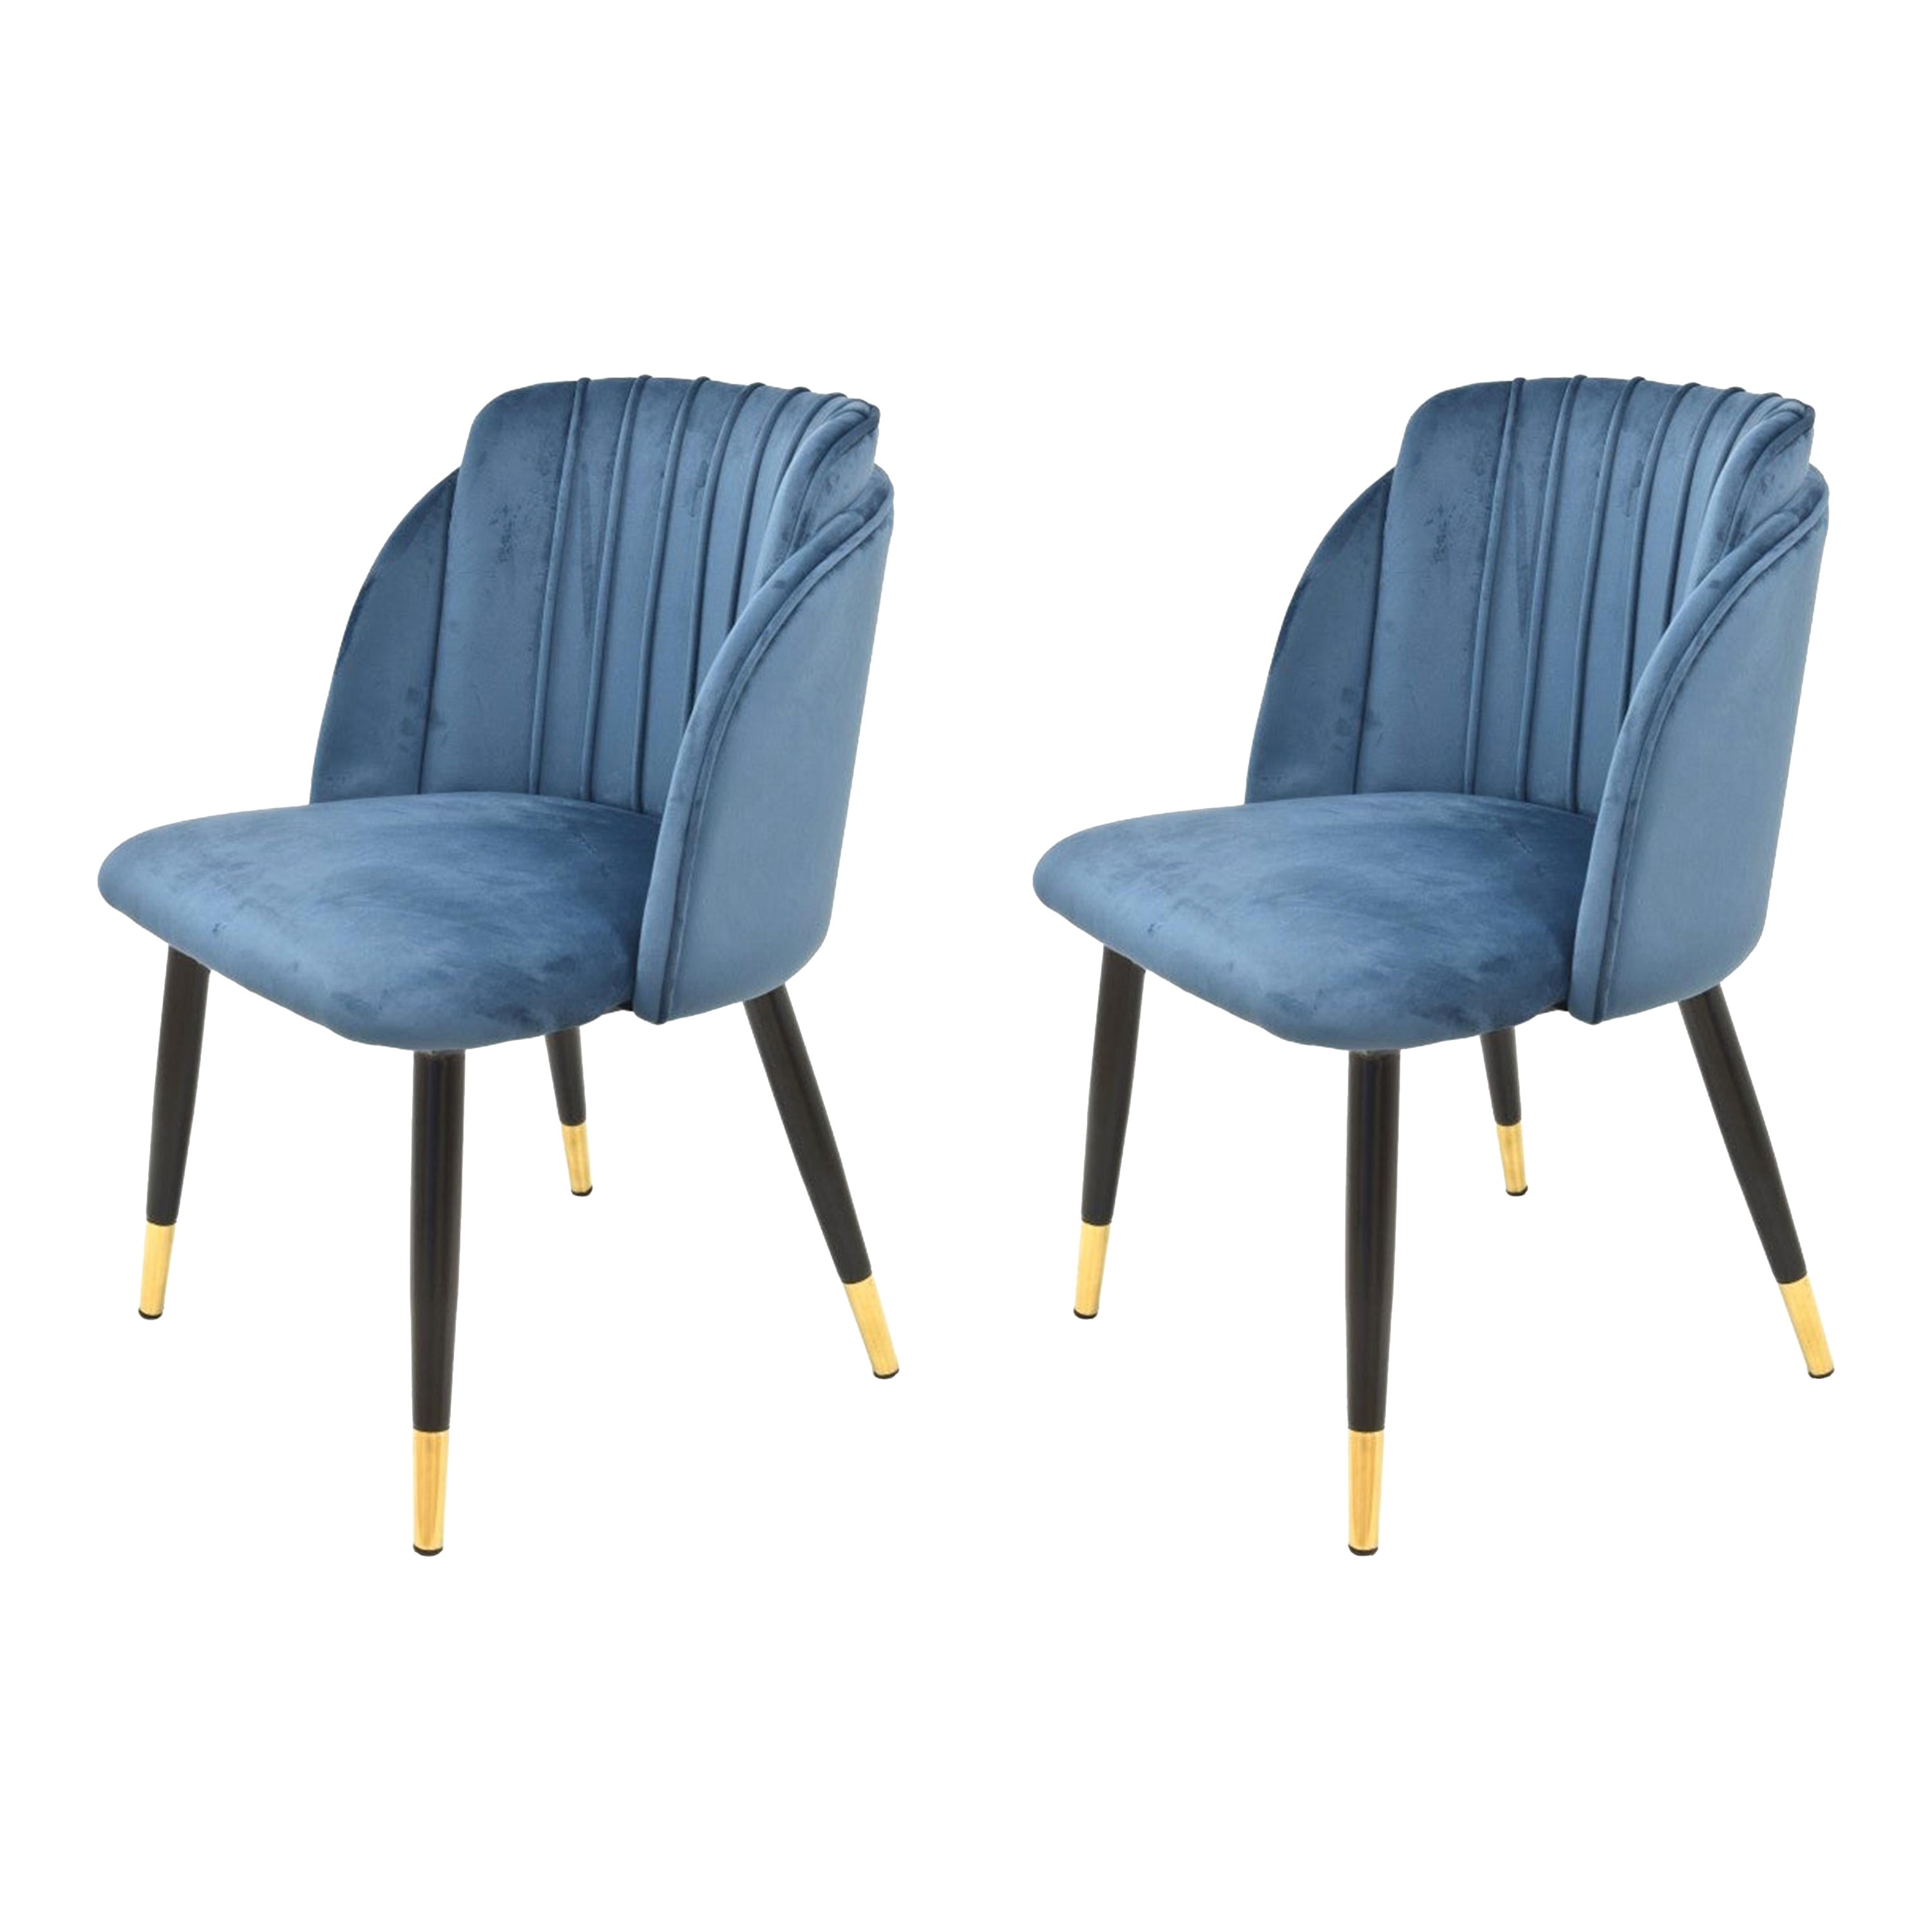 Ein Paar neue spanische Stühle, Metall, blaue Samtpolsterung